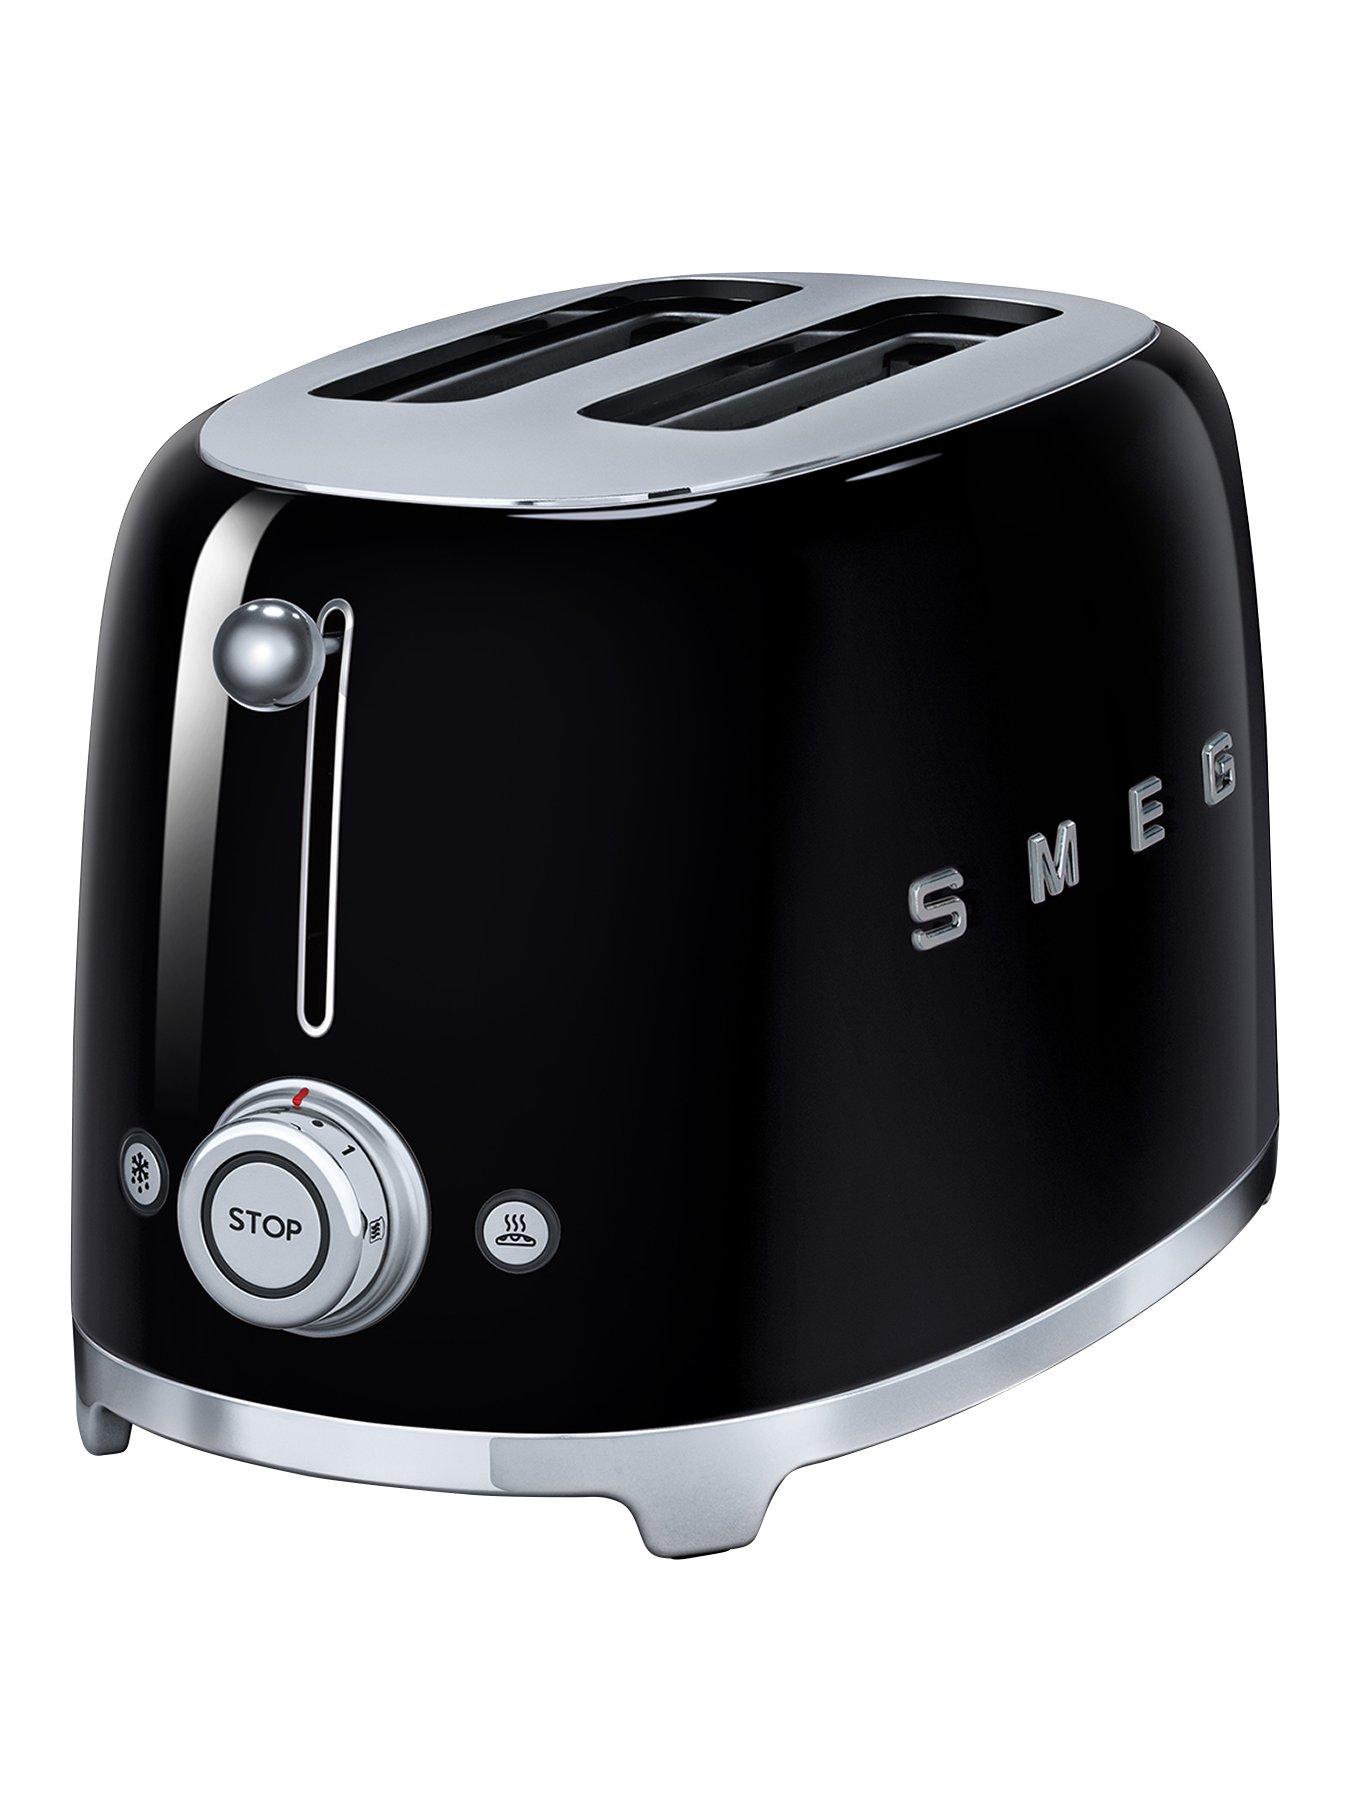 Smeg Tsf01 Retro Style 2 Slice Toaster, 950W - Black